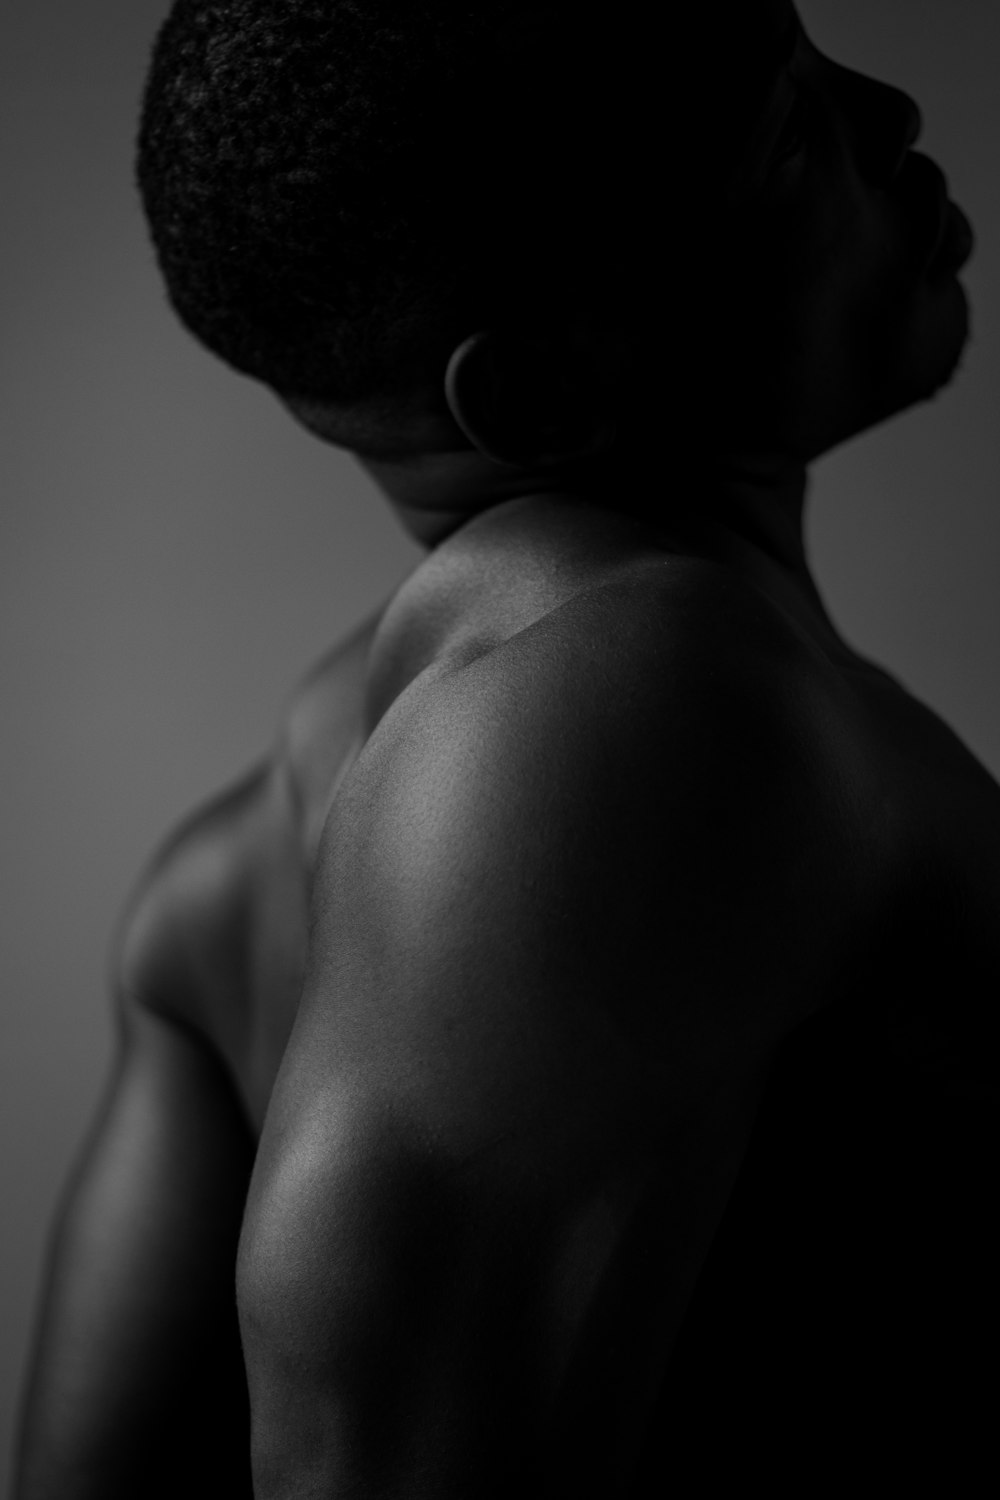 Una foto in bianco e nero della schiena di un uomo foto – Indietro Immagine  gratuita su Unsplash